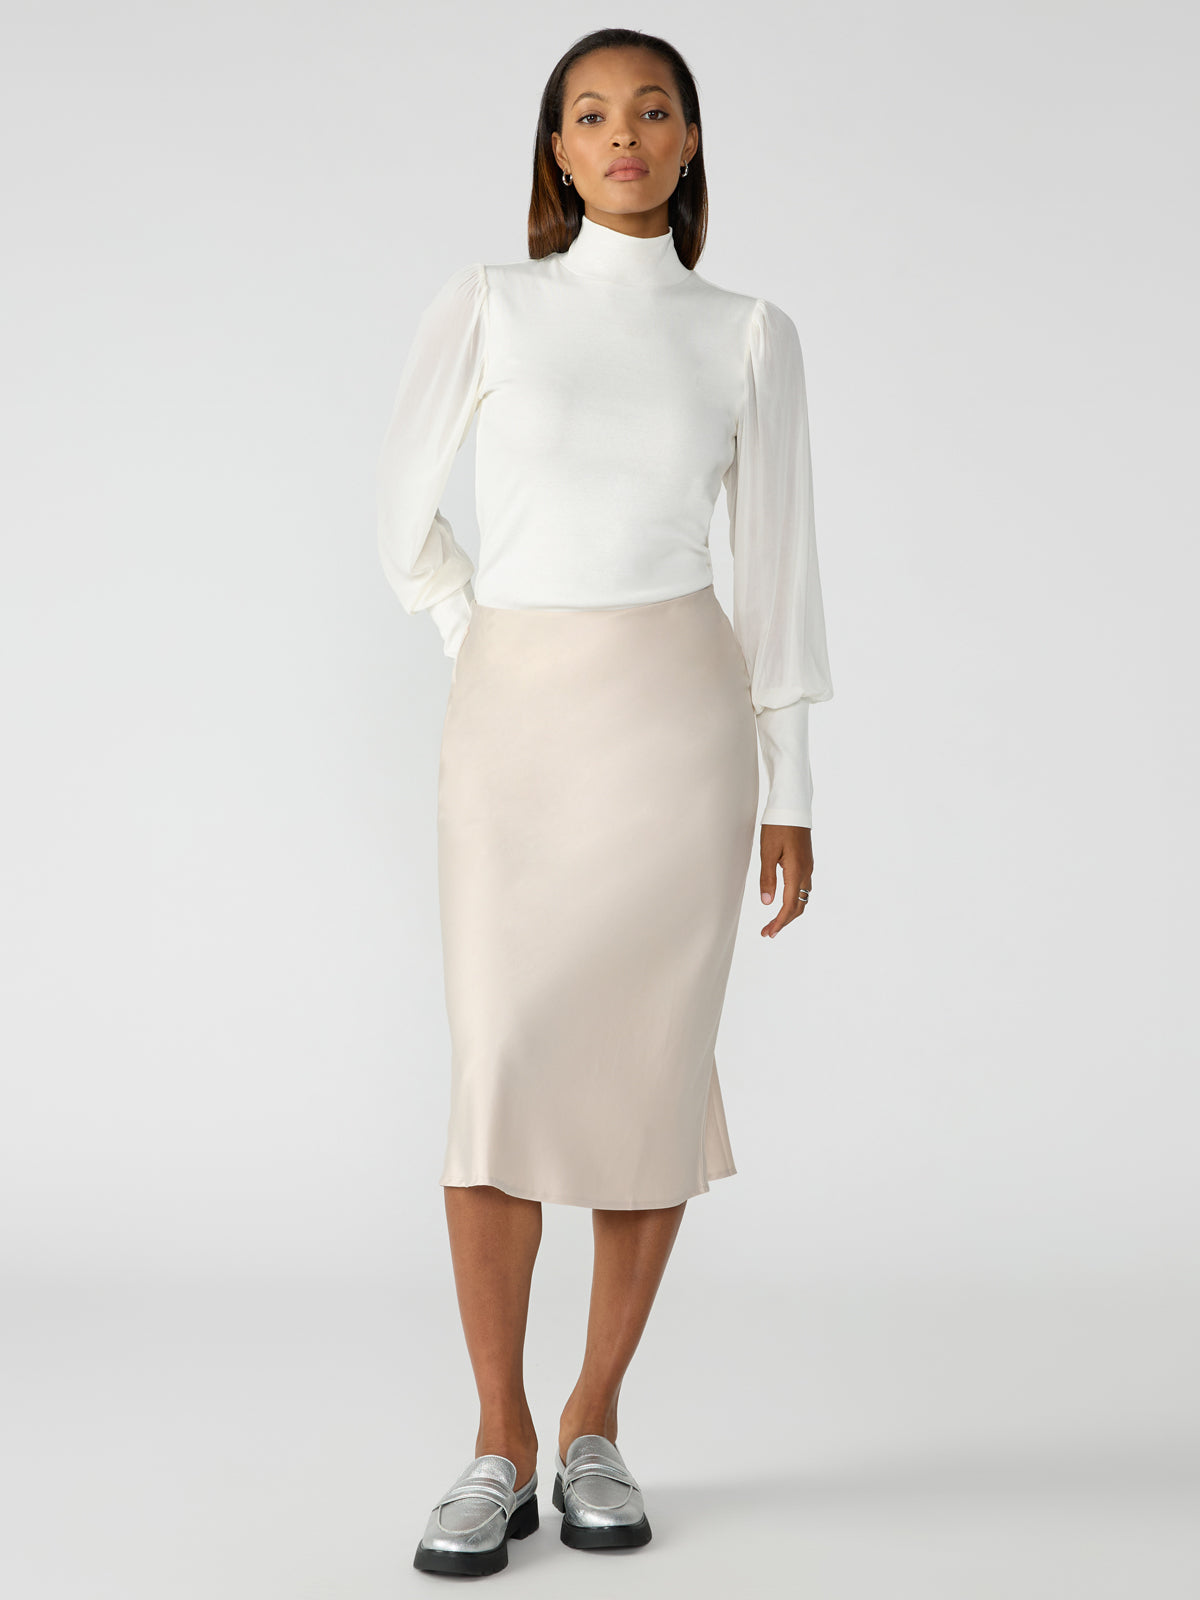 Midi – Sanctuary Everyday Clothing Skirt Marshmallow Toasted